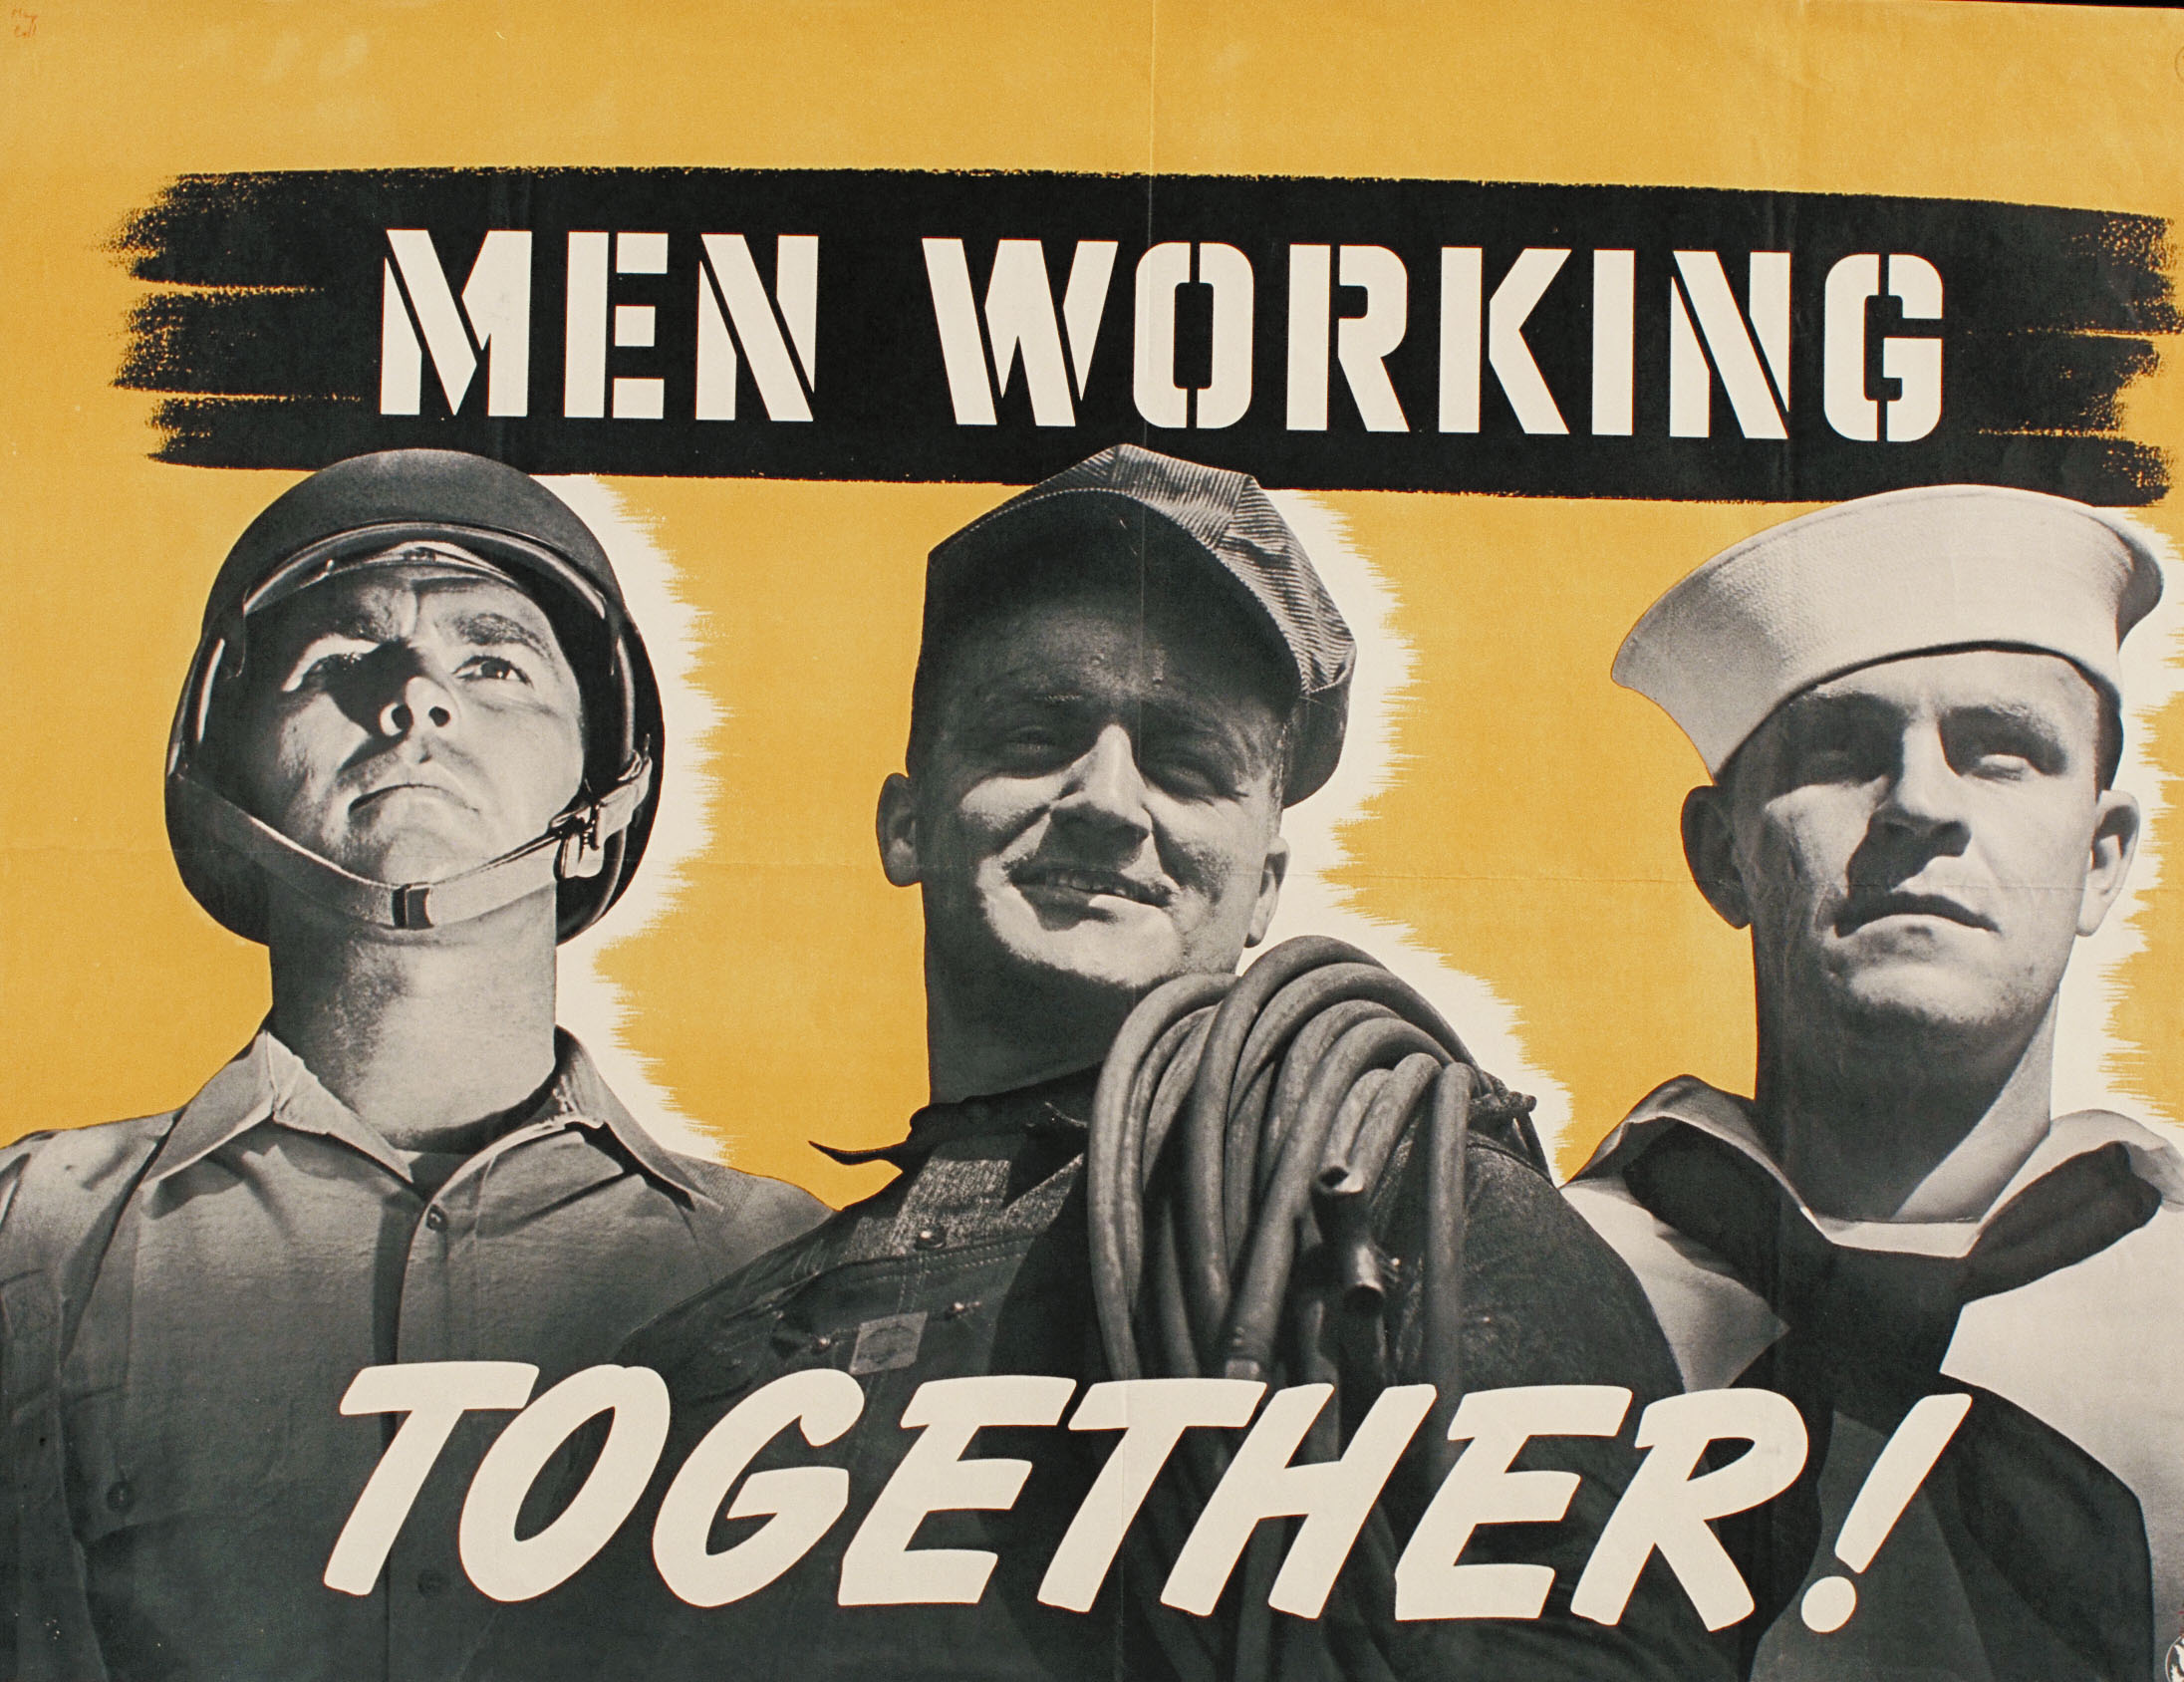 men working together